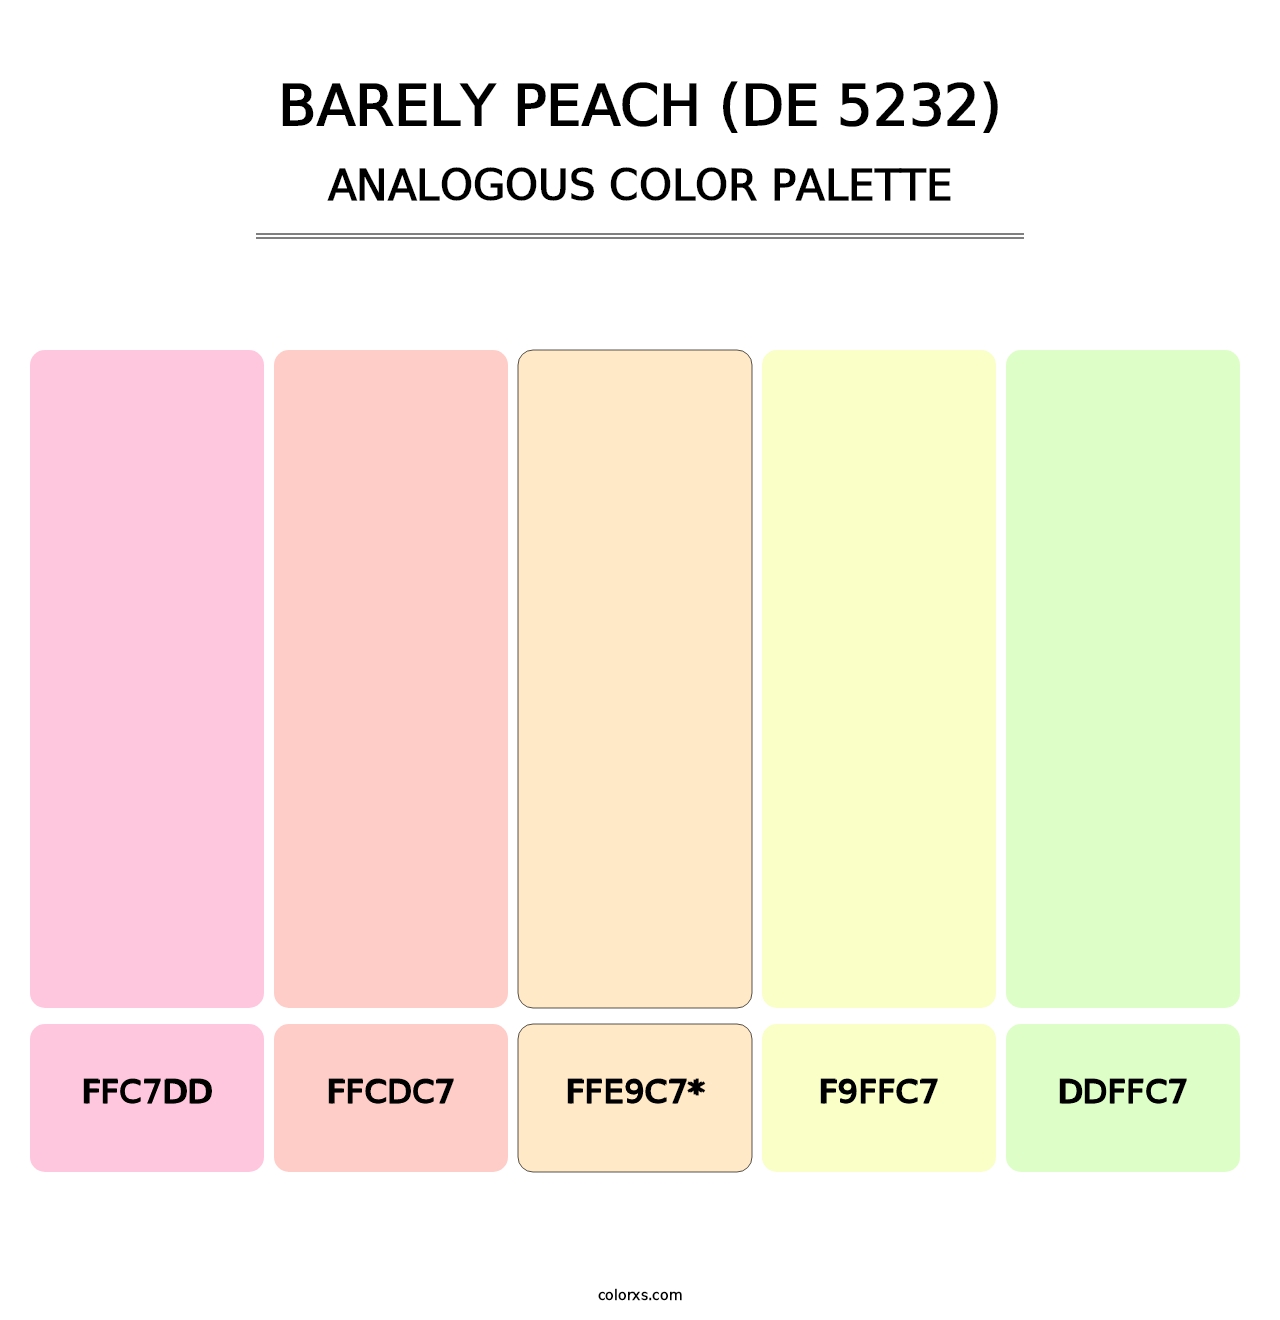 Barely Peach (DE 5232) - Analogous Color Palette